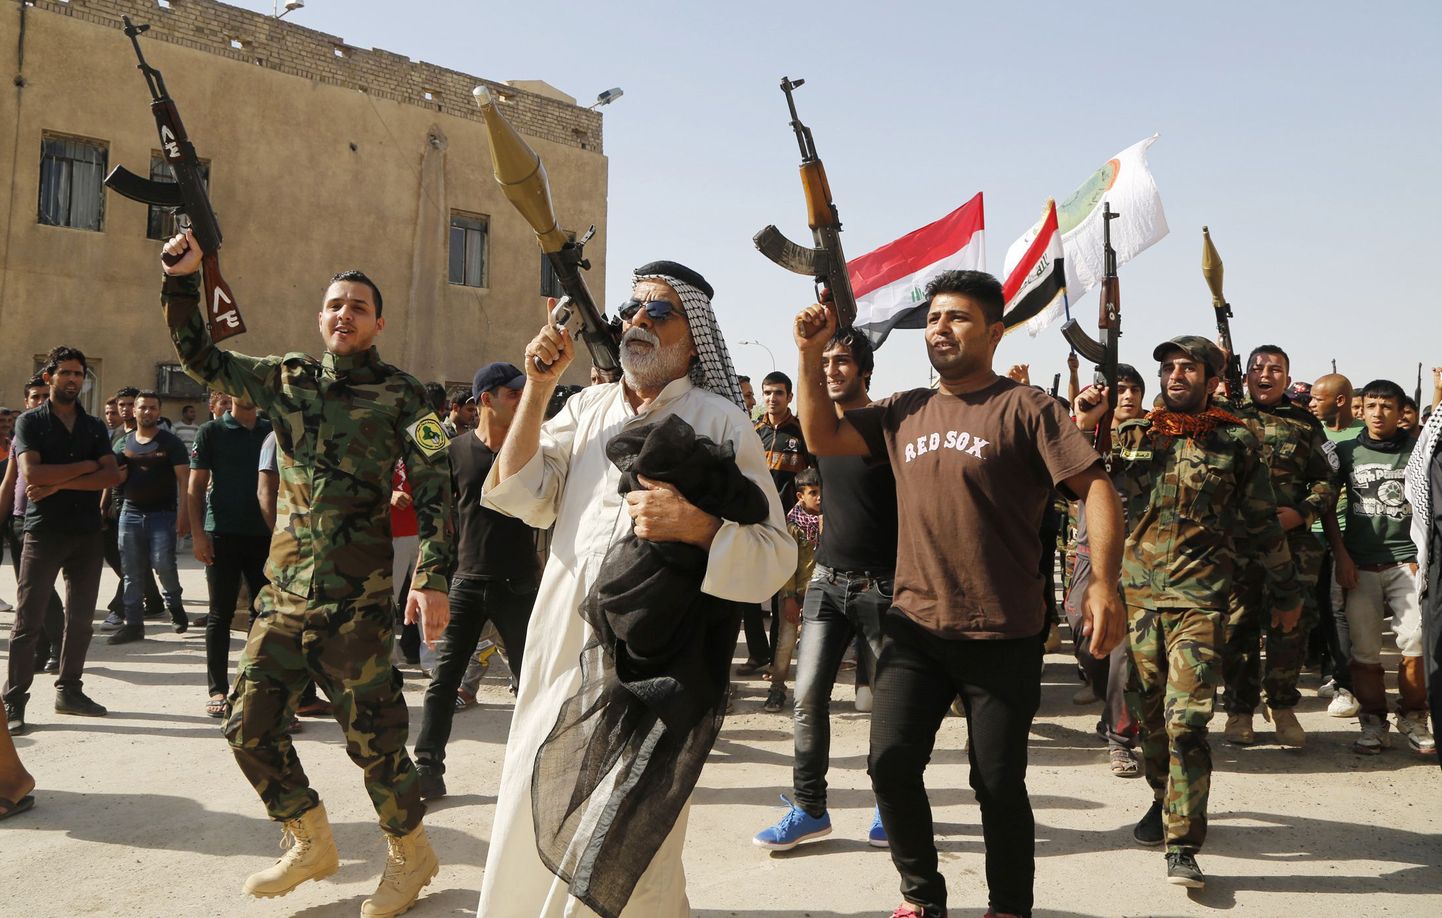 Tuhanded vabatahtlikud on liitunud Iraagi armeega, võitlemaks riiki ründavate äärmuslastega.